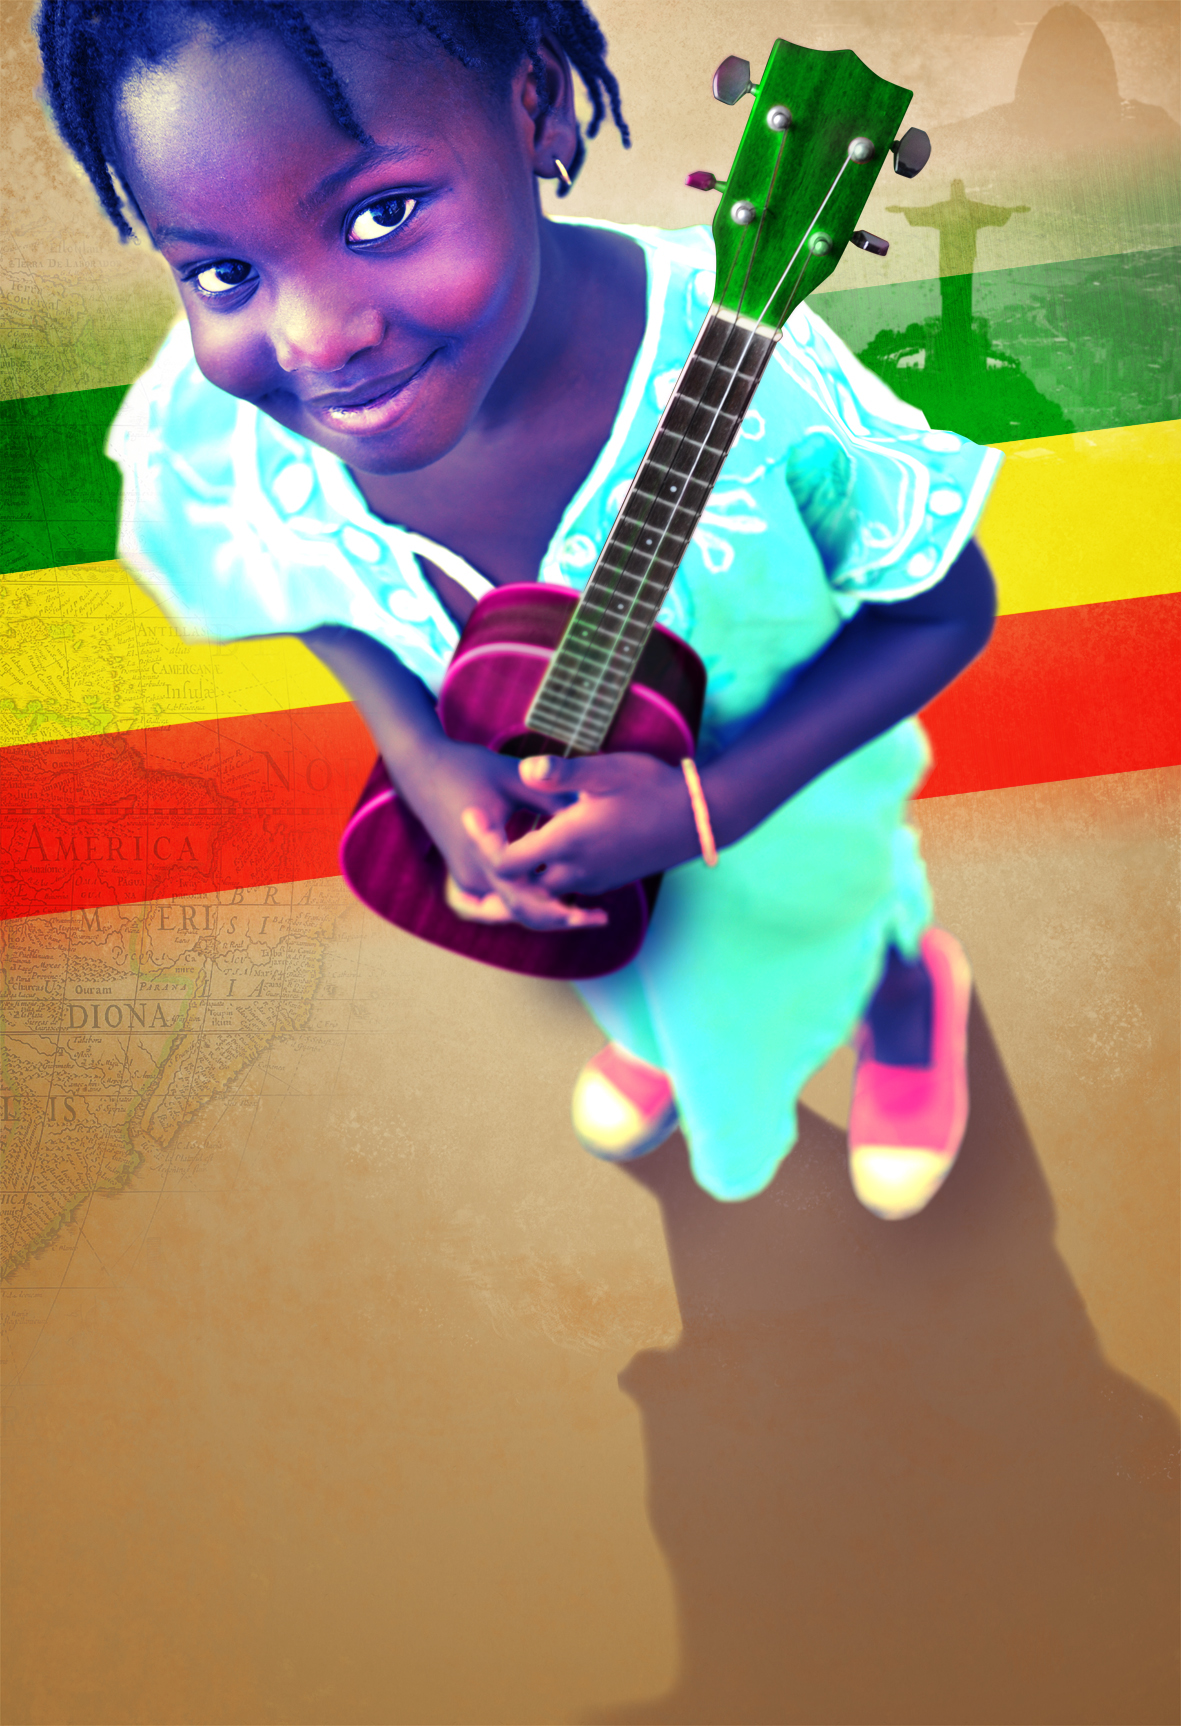 1er Festival Rio Dakar Kingston Badou Mandiang affiche concert reggae musique africaine afrique Culture africaine Métissage mieux-vivre ensemble